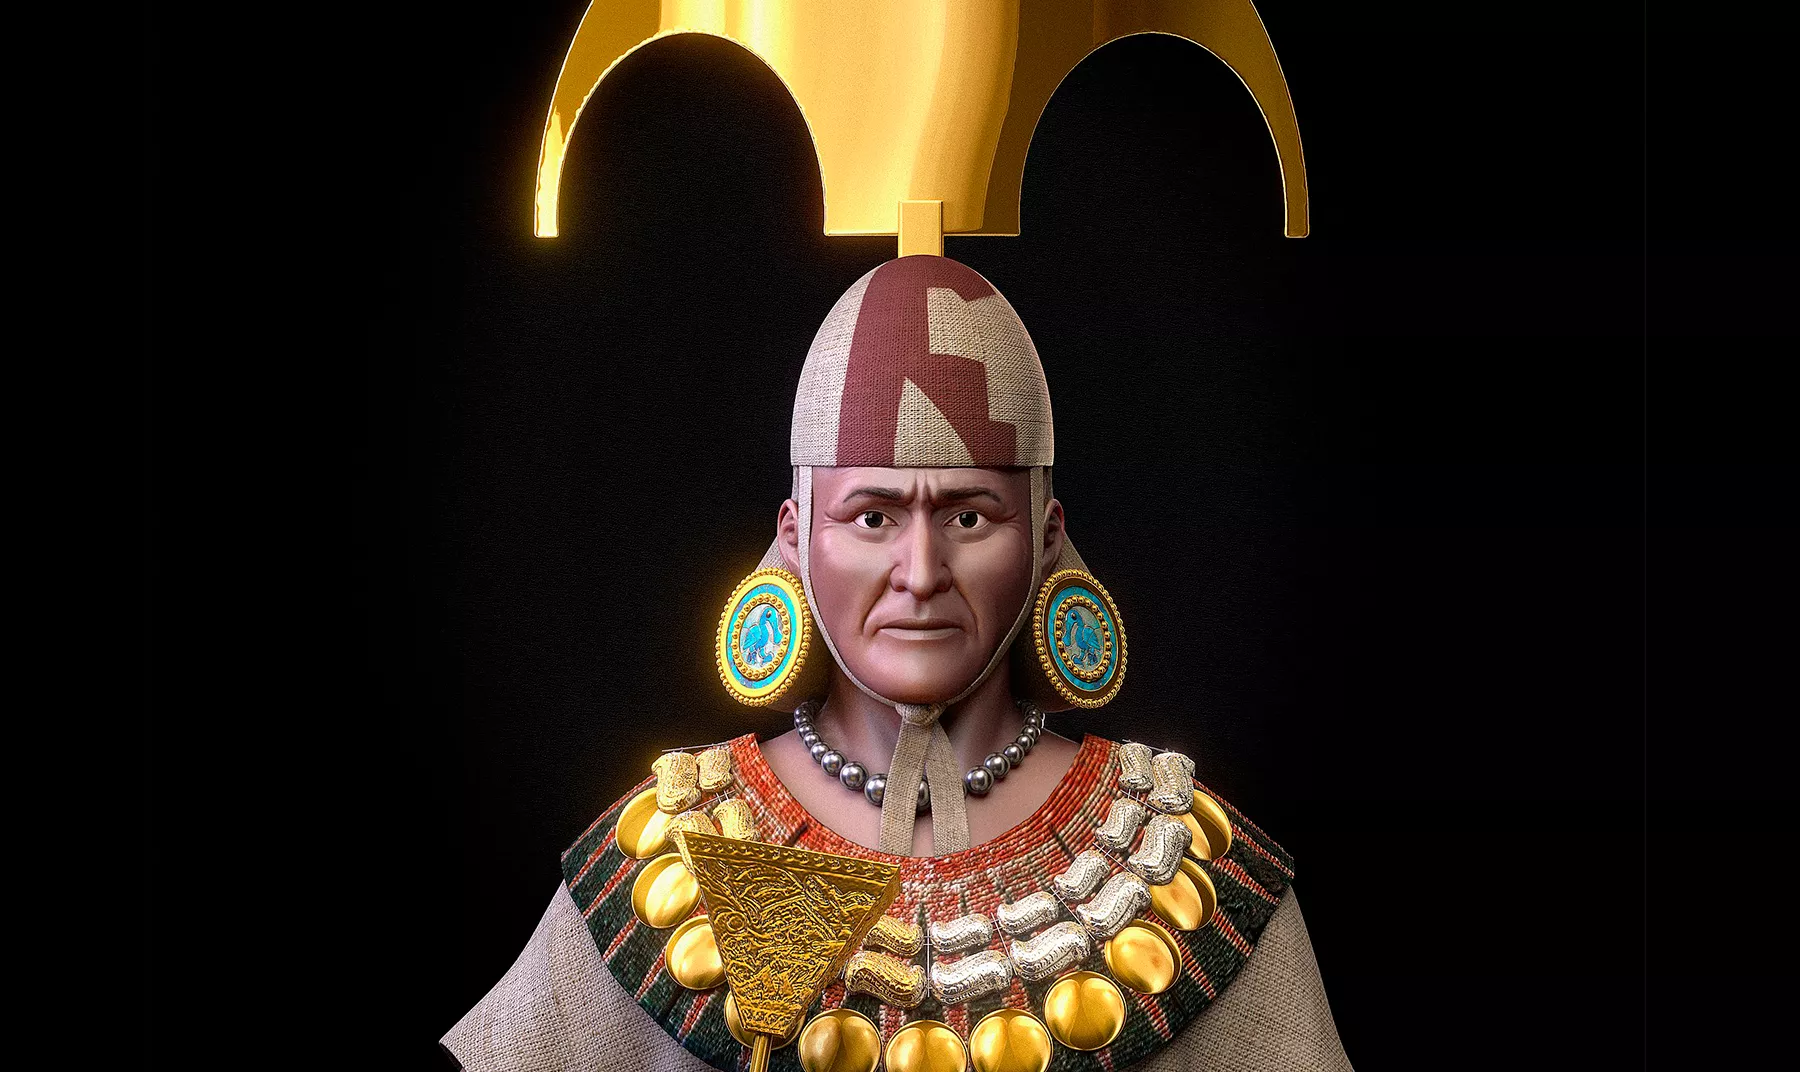 Reconstrucció facial forense del senyor de Sipan que va fer la Universitat Inca Garcilaso de la Vega i el Museu Tumbas Reales de Sipán